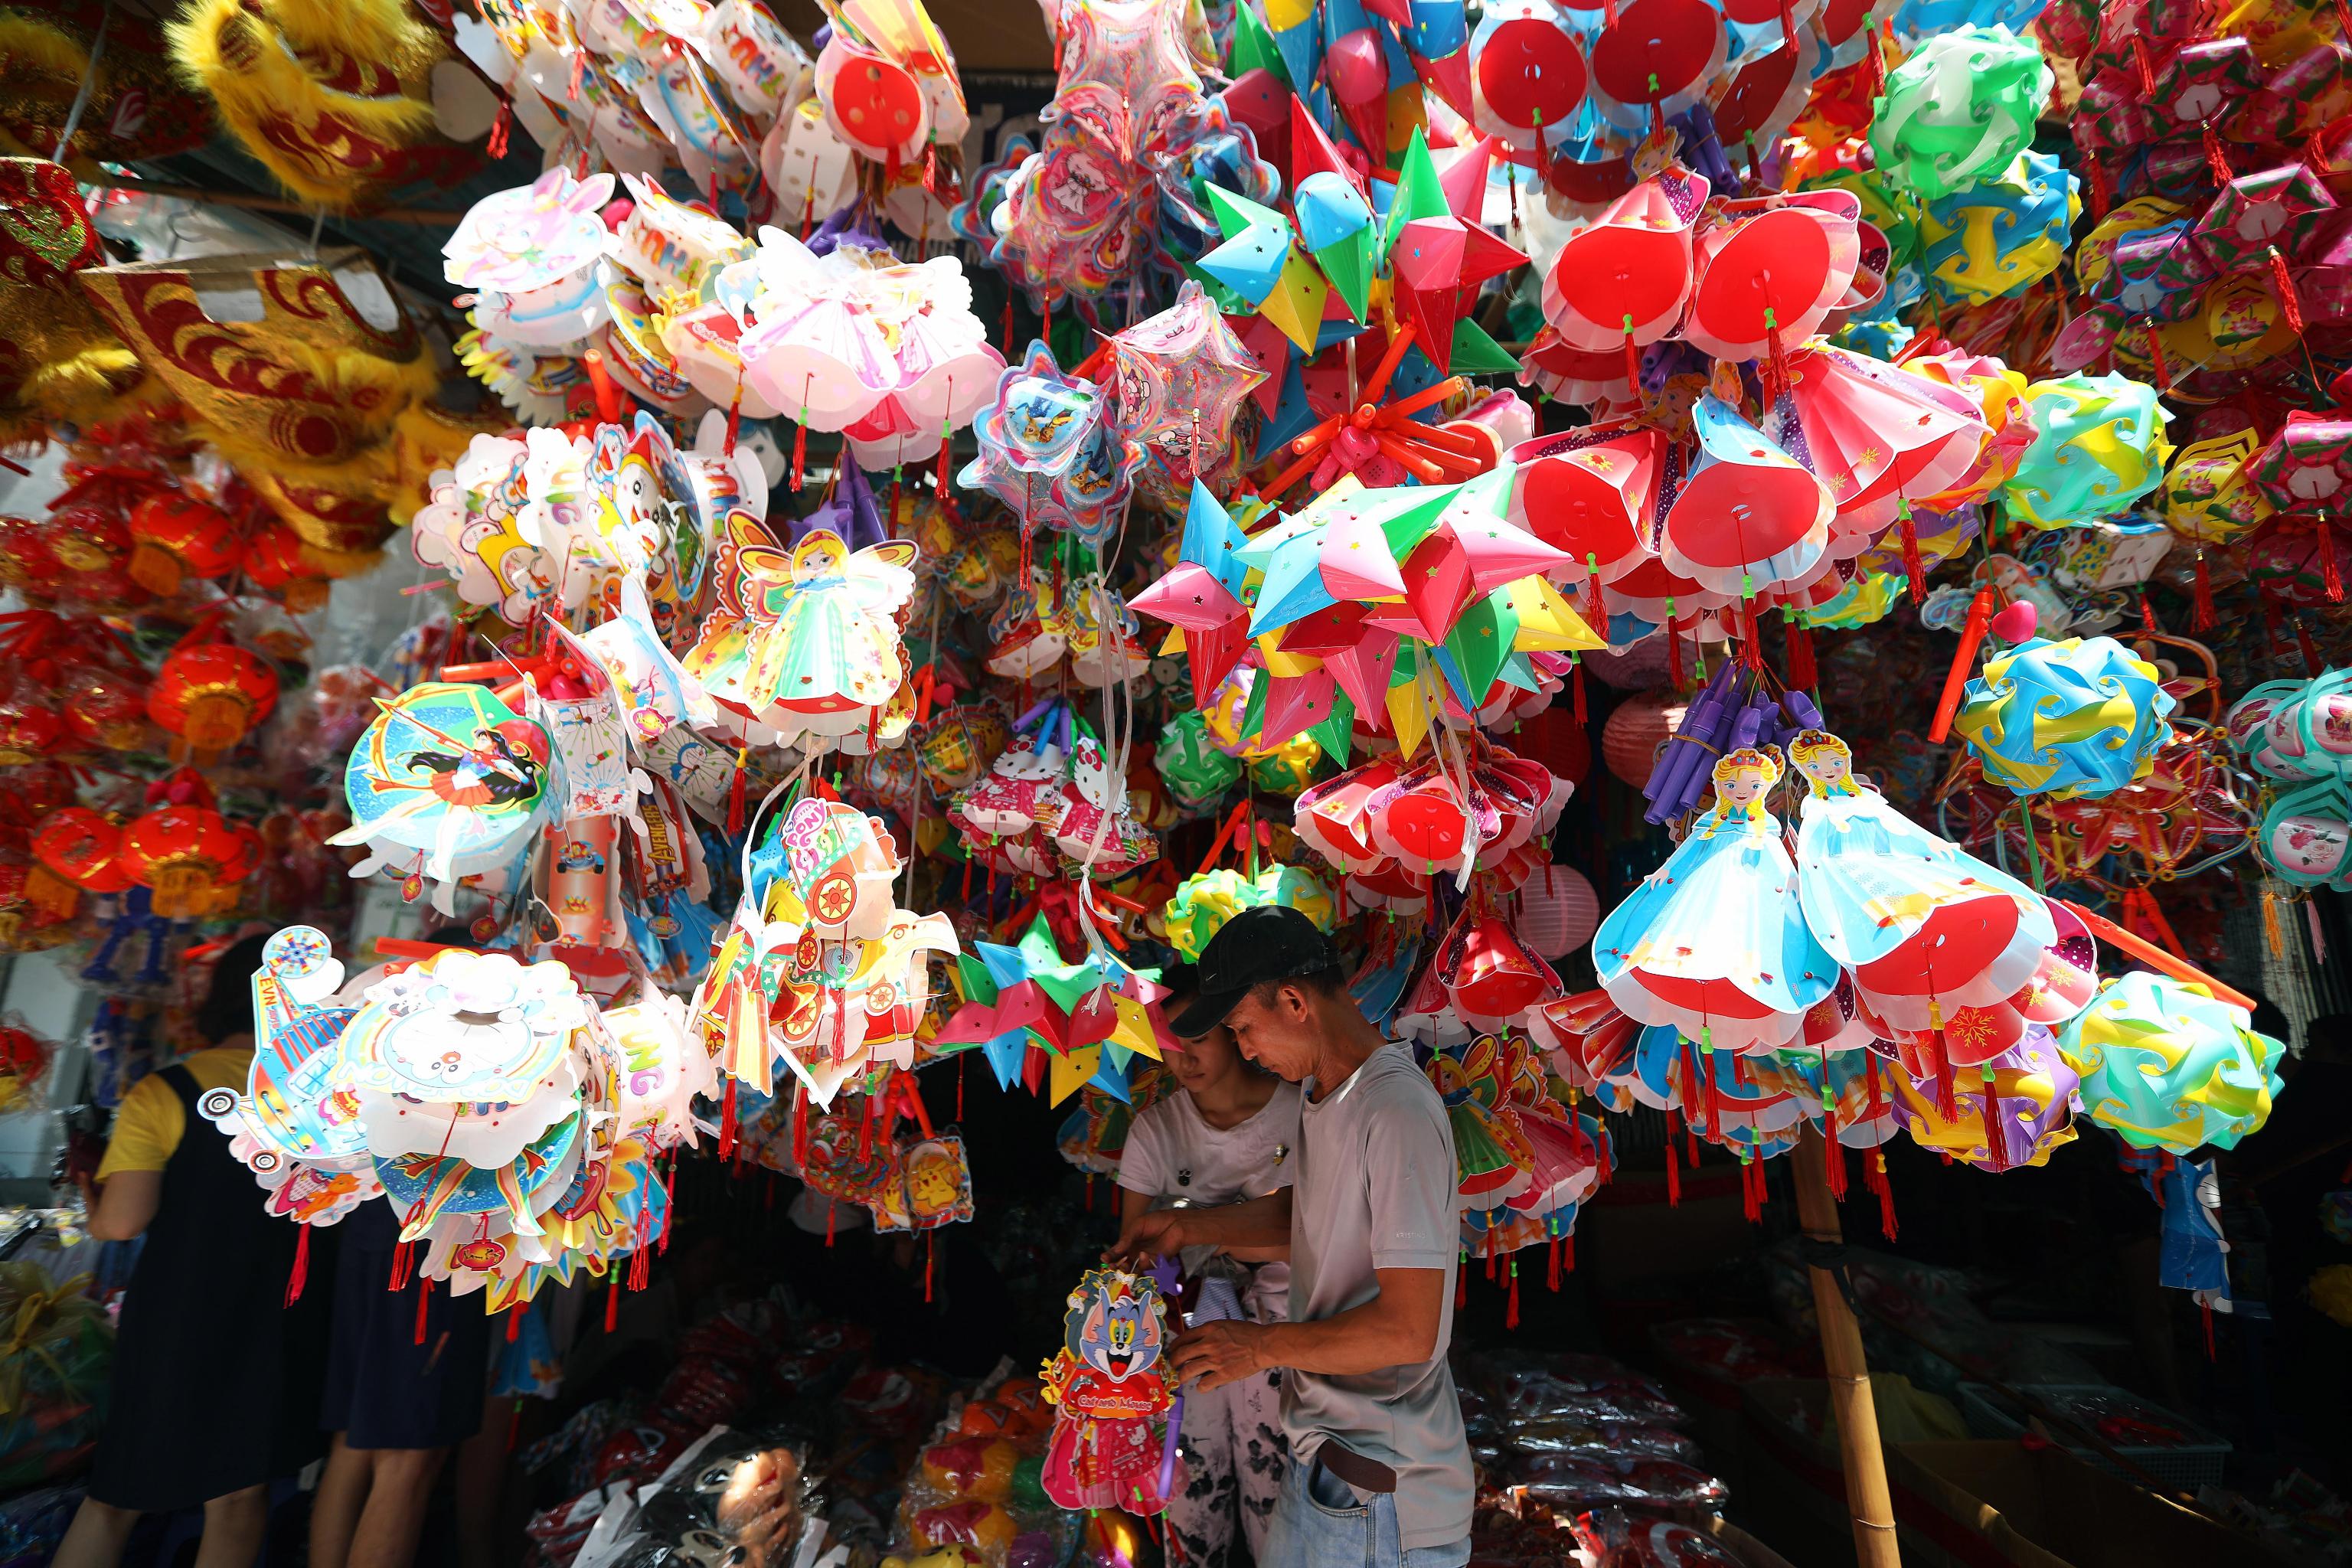 Le coloratissime lanterne pronte per il Mid-Autumn Festival. A causa dell'influenza culturale della Cina antica, il Mid-Autumn Festival si è diffuso in altre parti dell'est, sud-est e sud asiatico. Tuttavia, il modo in cui diversi paesi lo celebrano varia.